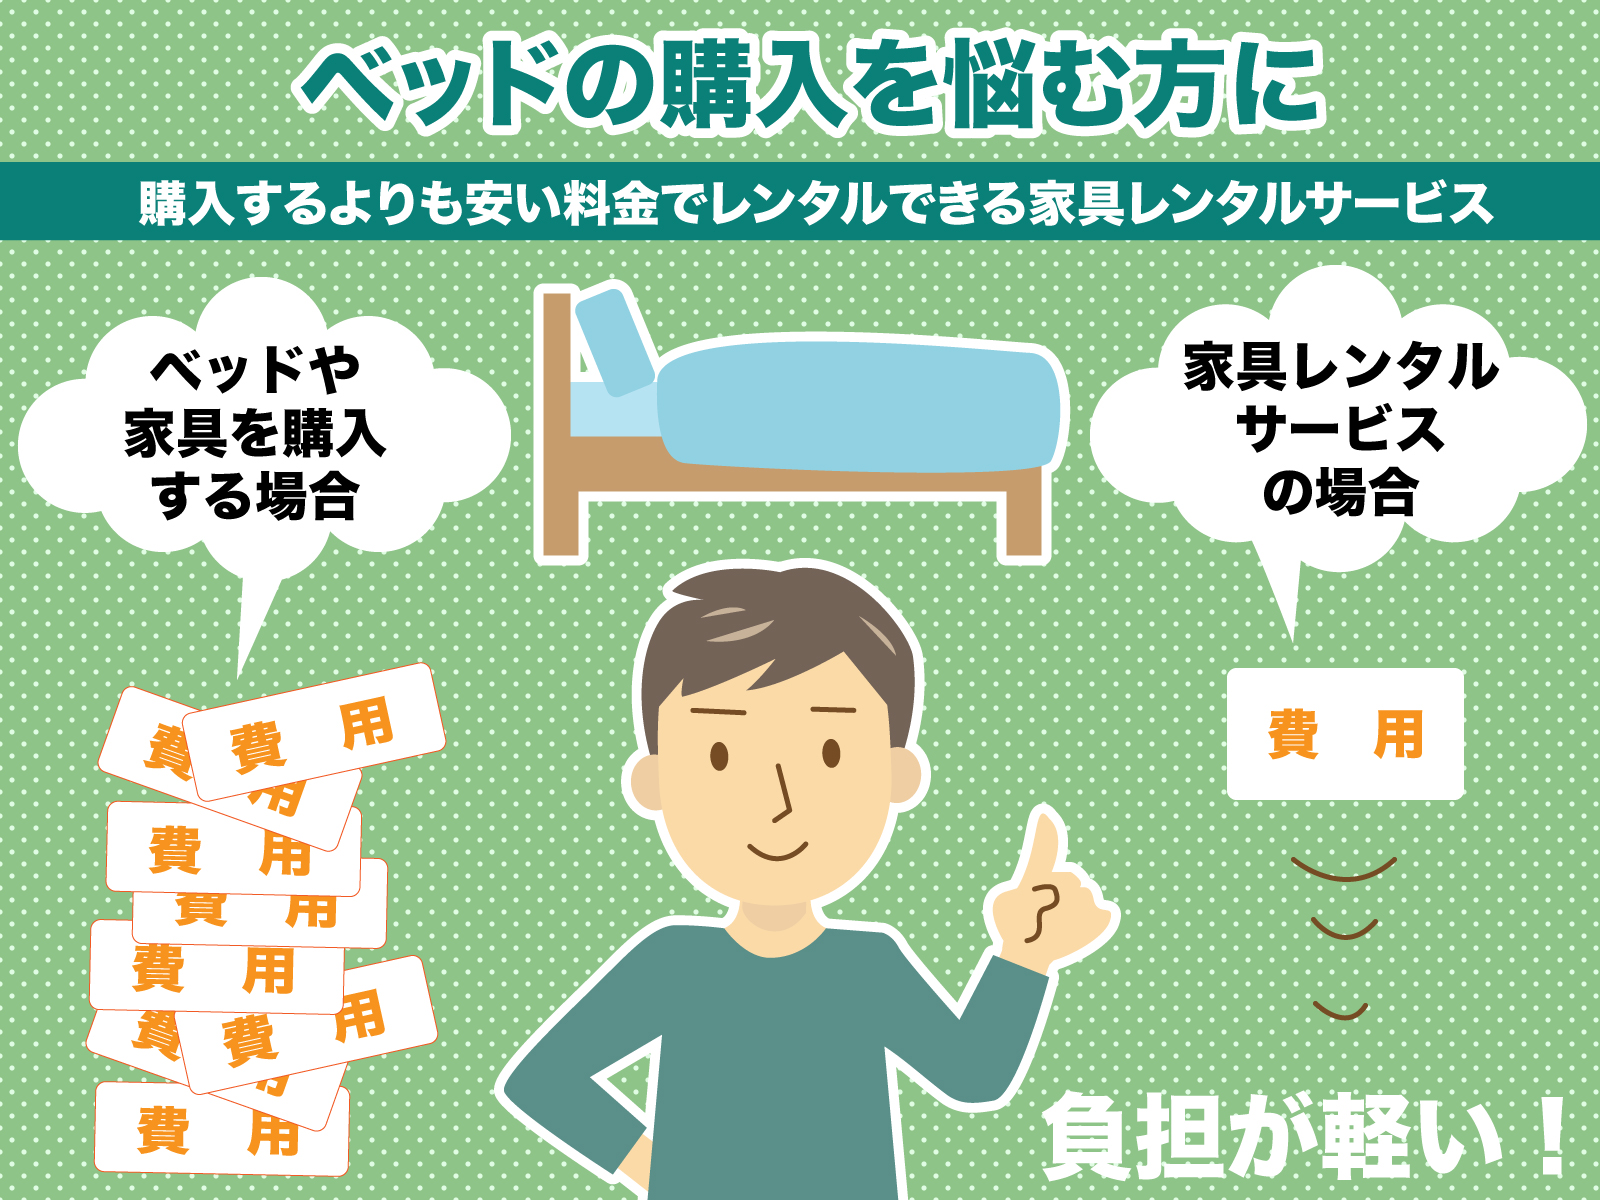 横浜でベッドをレンタルできるおすすめのレンタルサービス5選